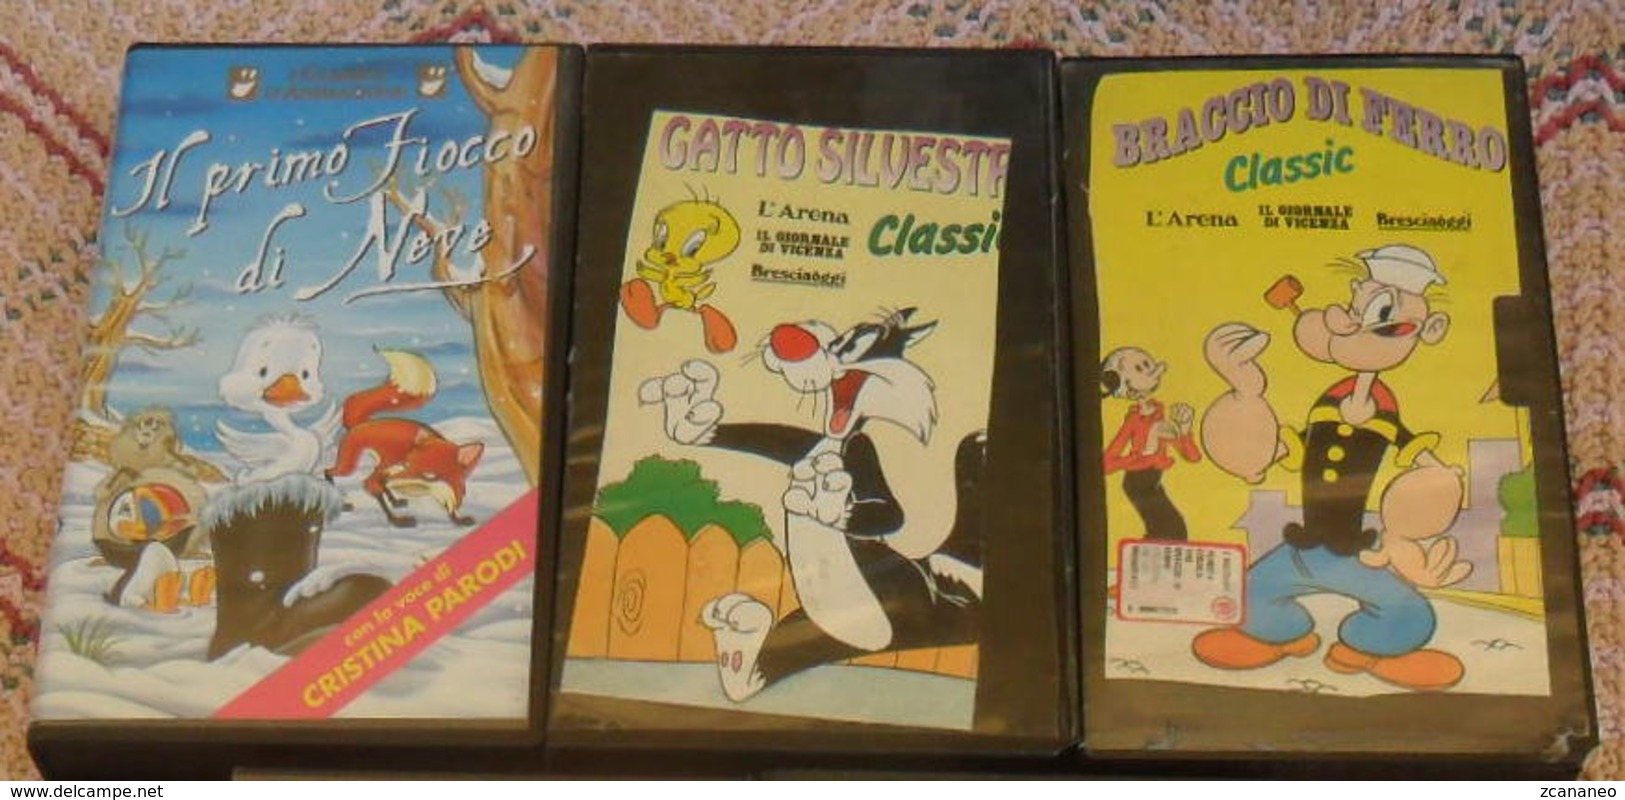 3 VHS CARTONI ANIMATI - BRACCIO DI FERRO - GATTO SILVESTRO - IL PRIMO FIOCCO DI NEVE - - Cartoons